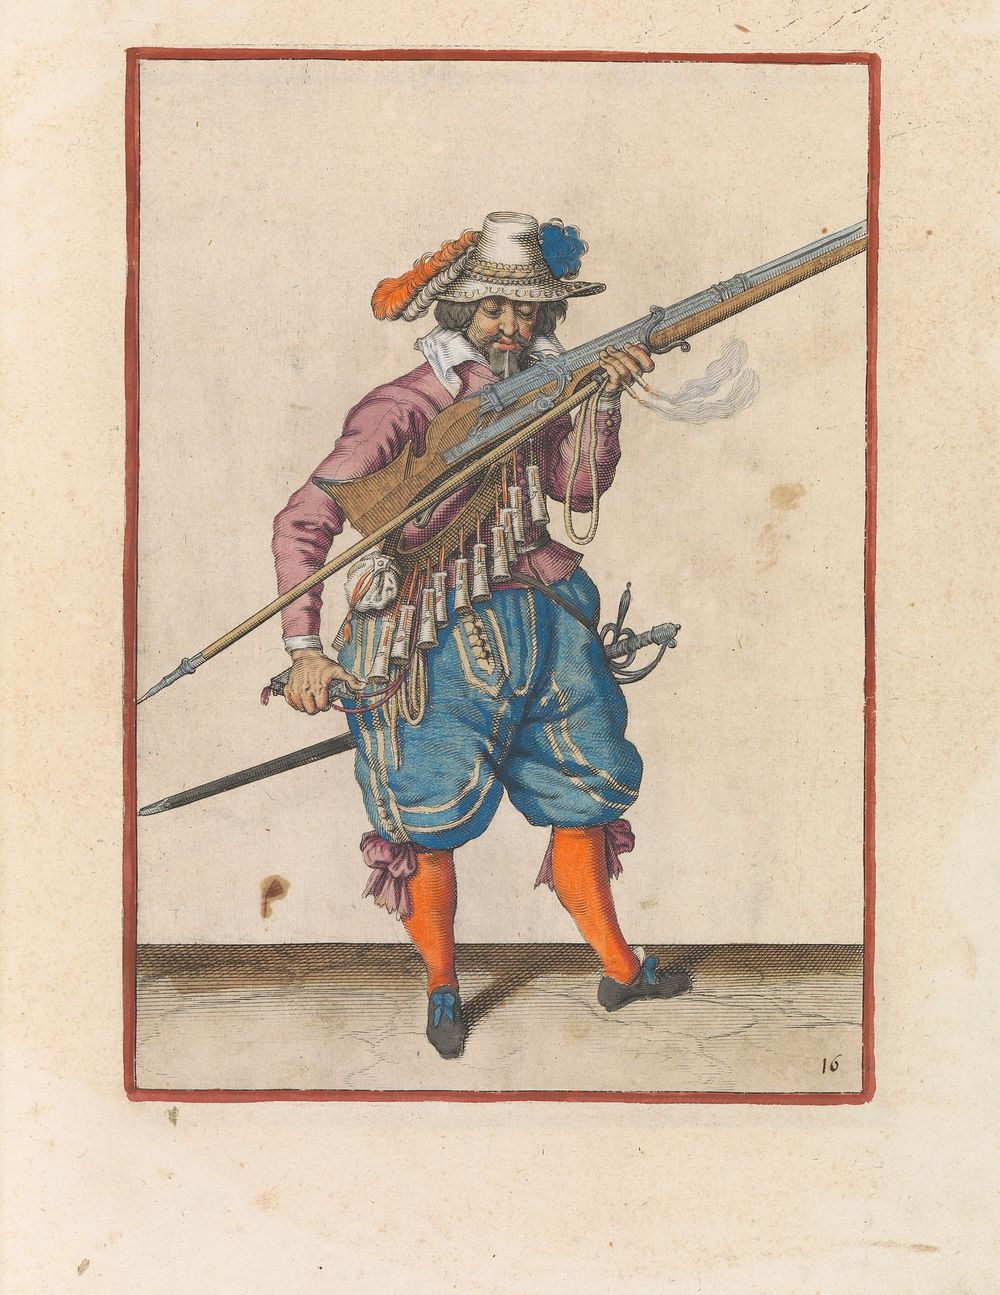 Soldaat die vonken wegblaast van de pan van zijn musket (c. 1597 - 1607) by Jacques de Gheyn II and Jacques de Gheyn II